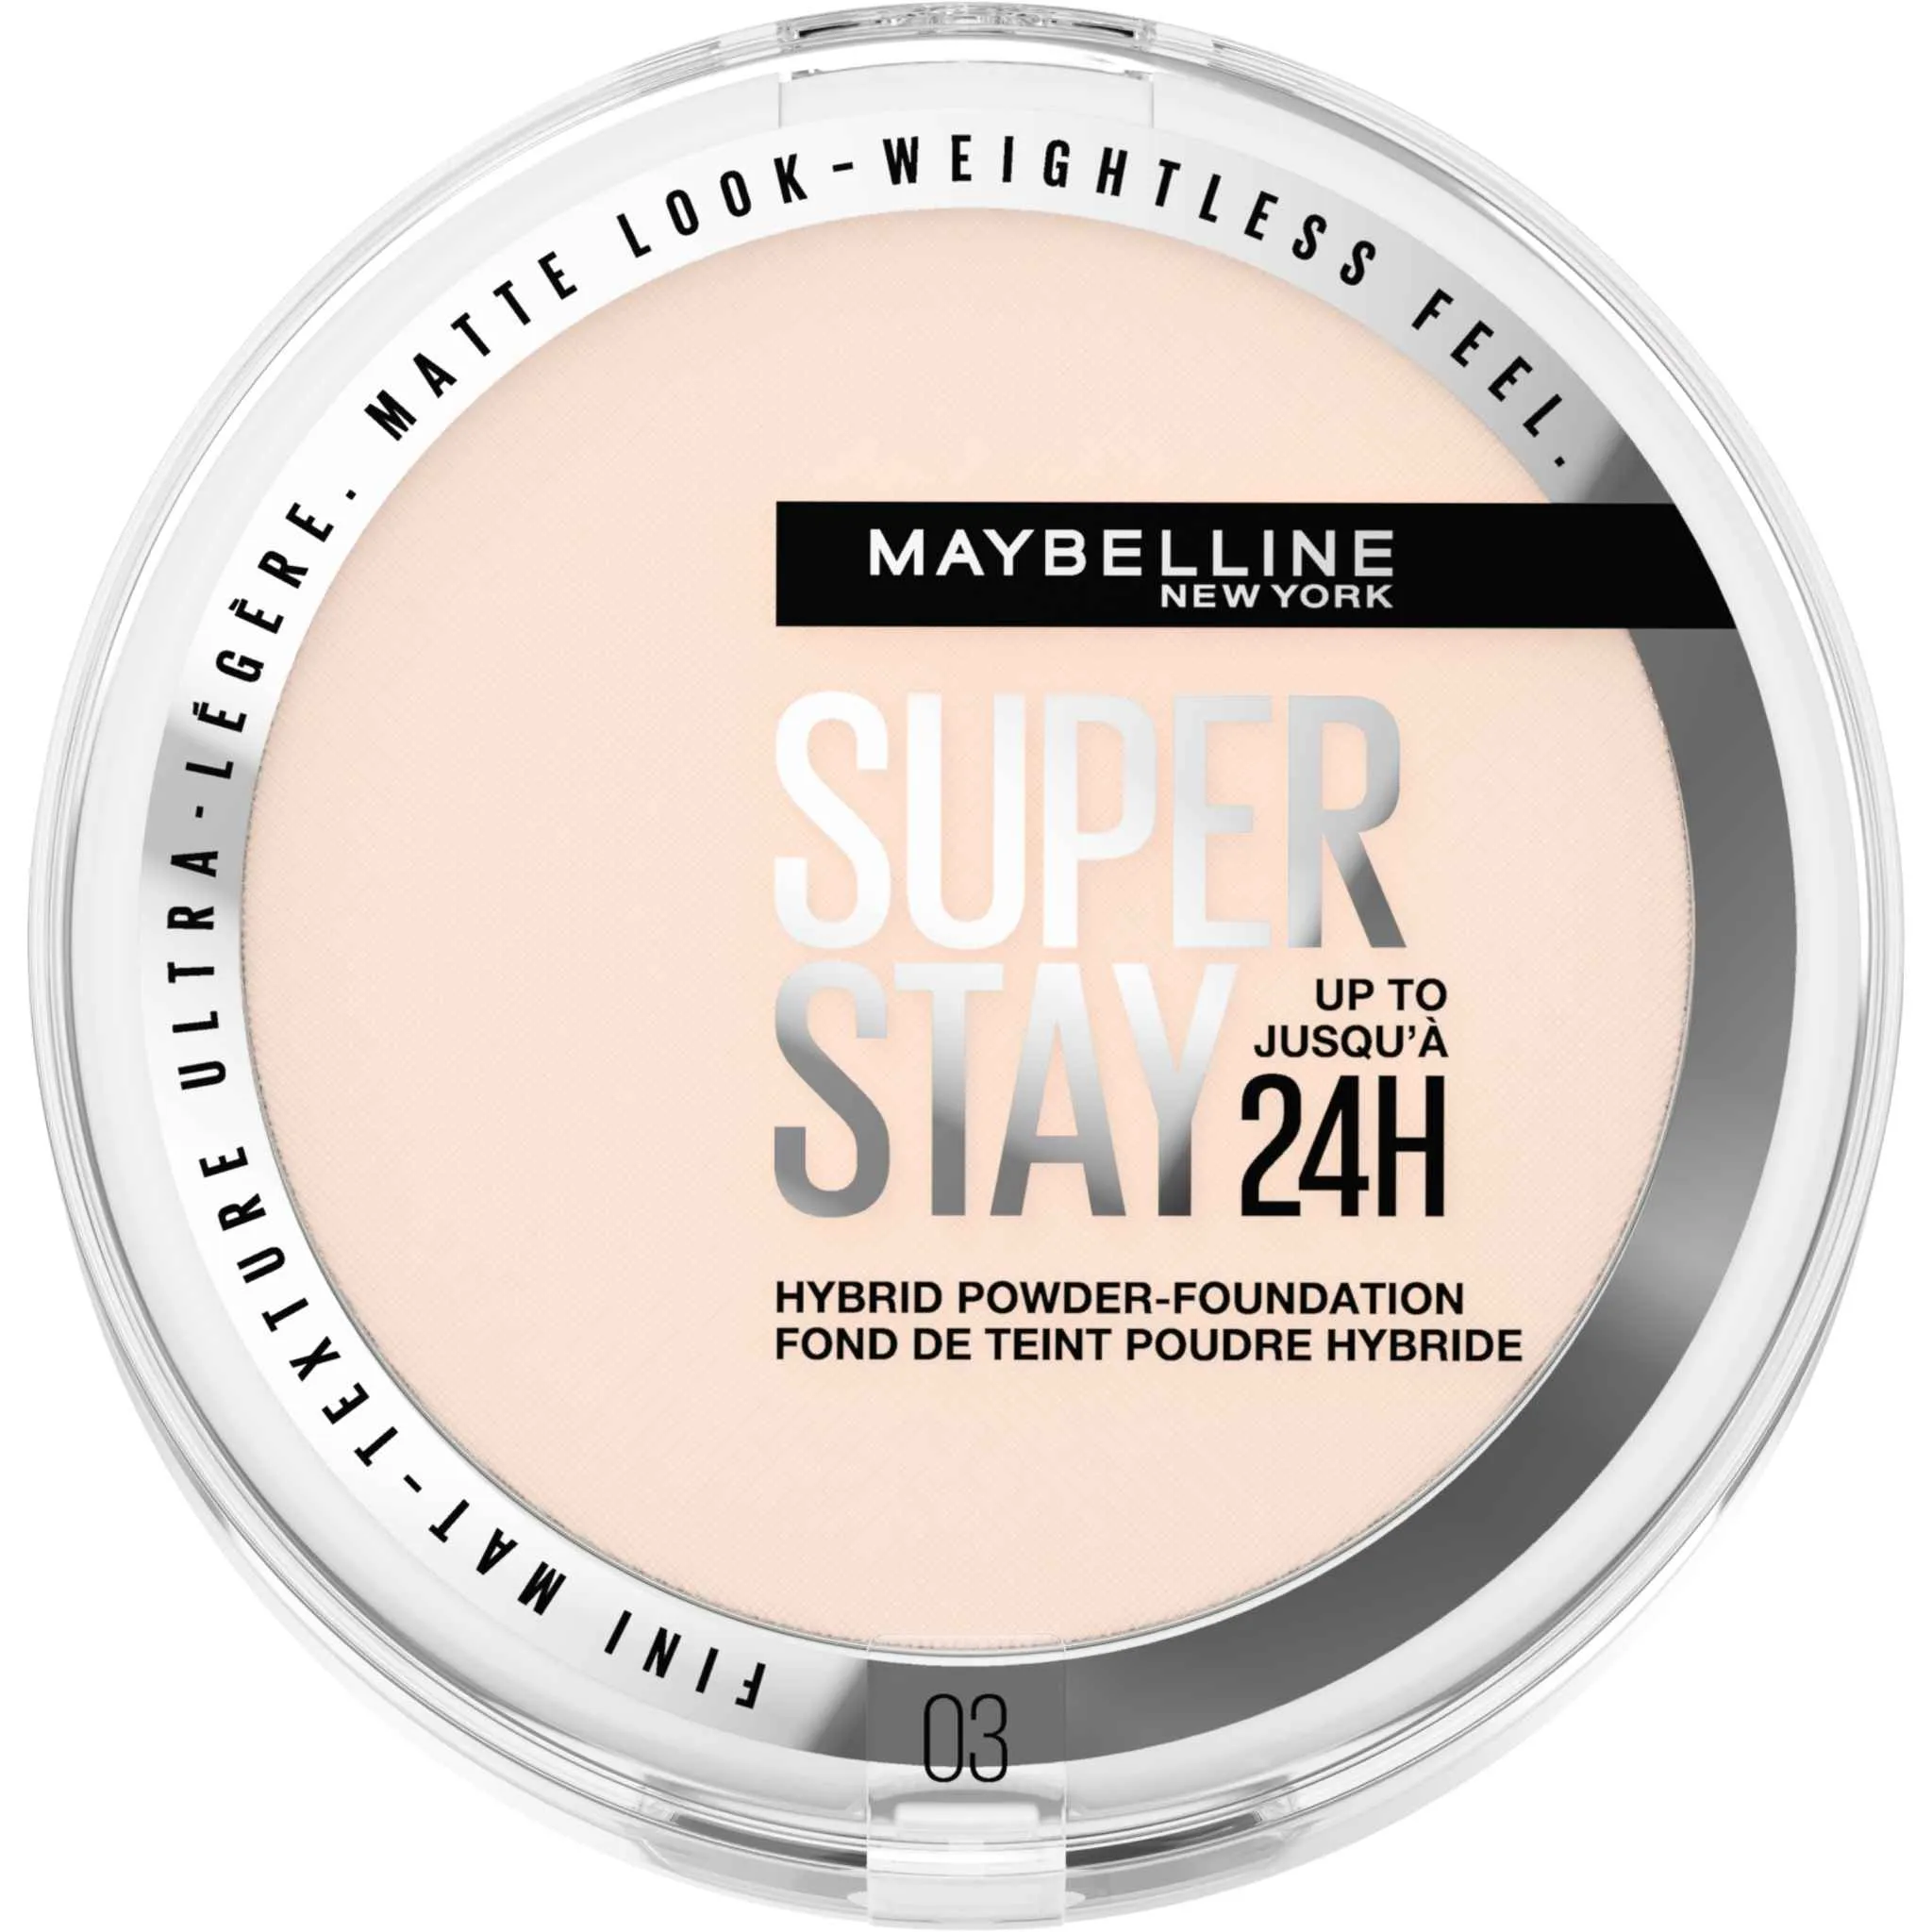 Maybelline New York SuperStay 24H Hybrid Powder-Foundation 03 make-up v púdri, 9 g